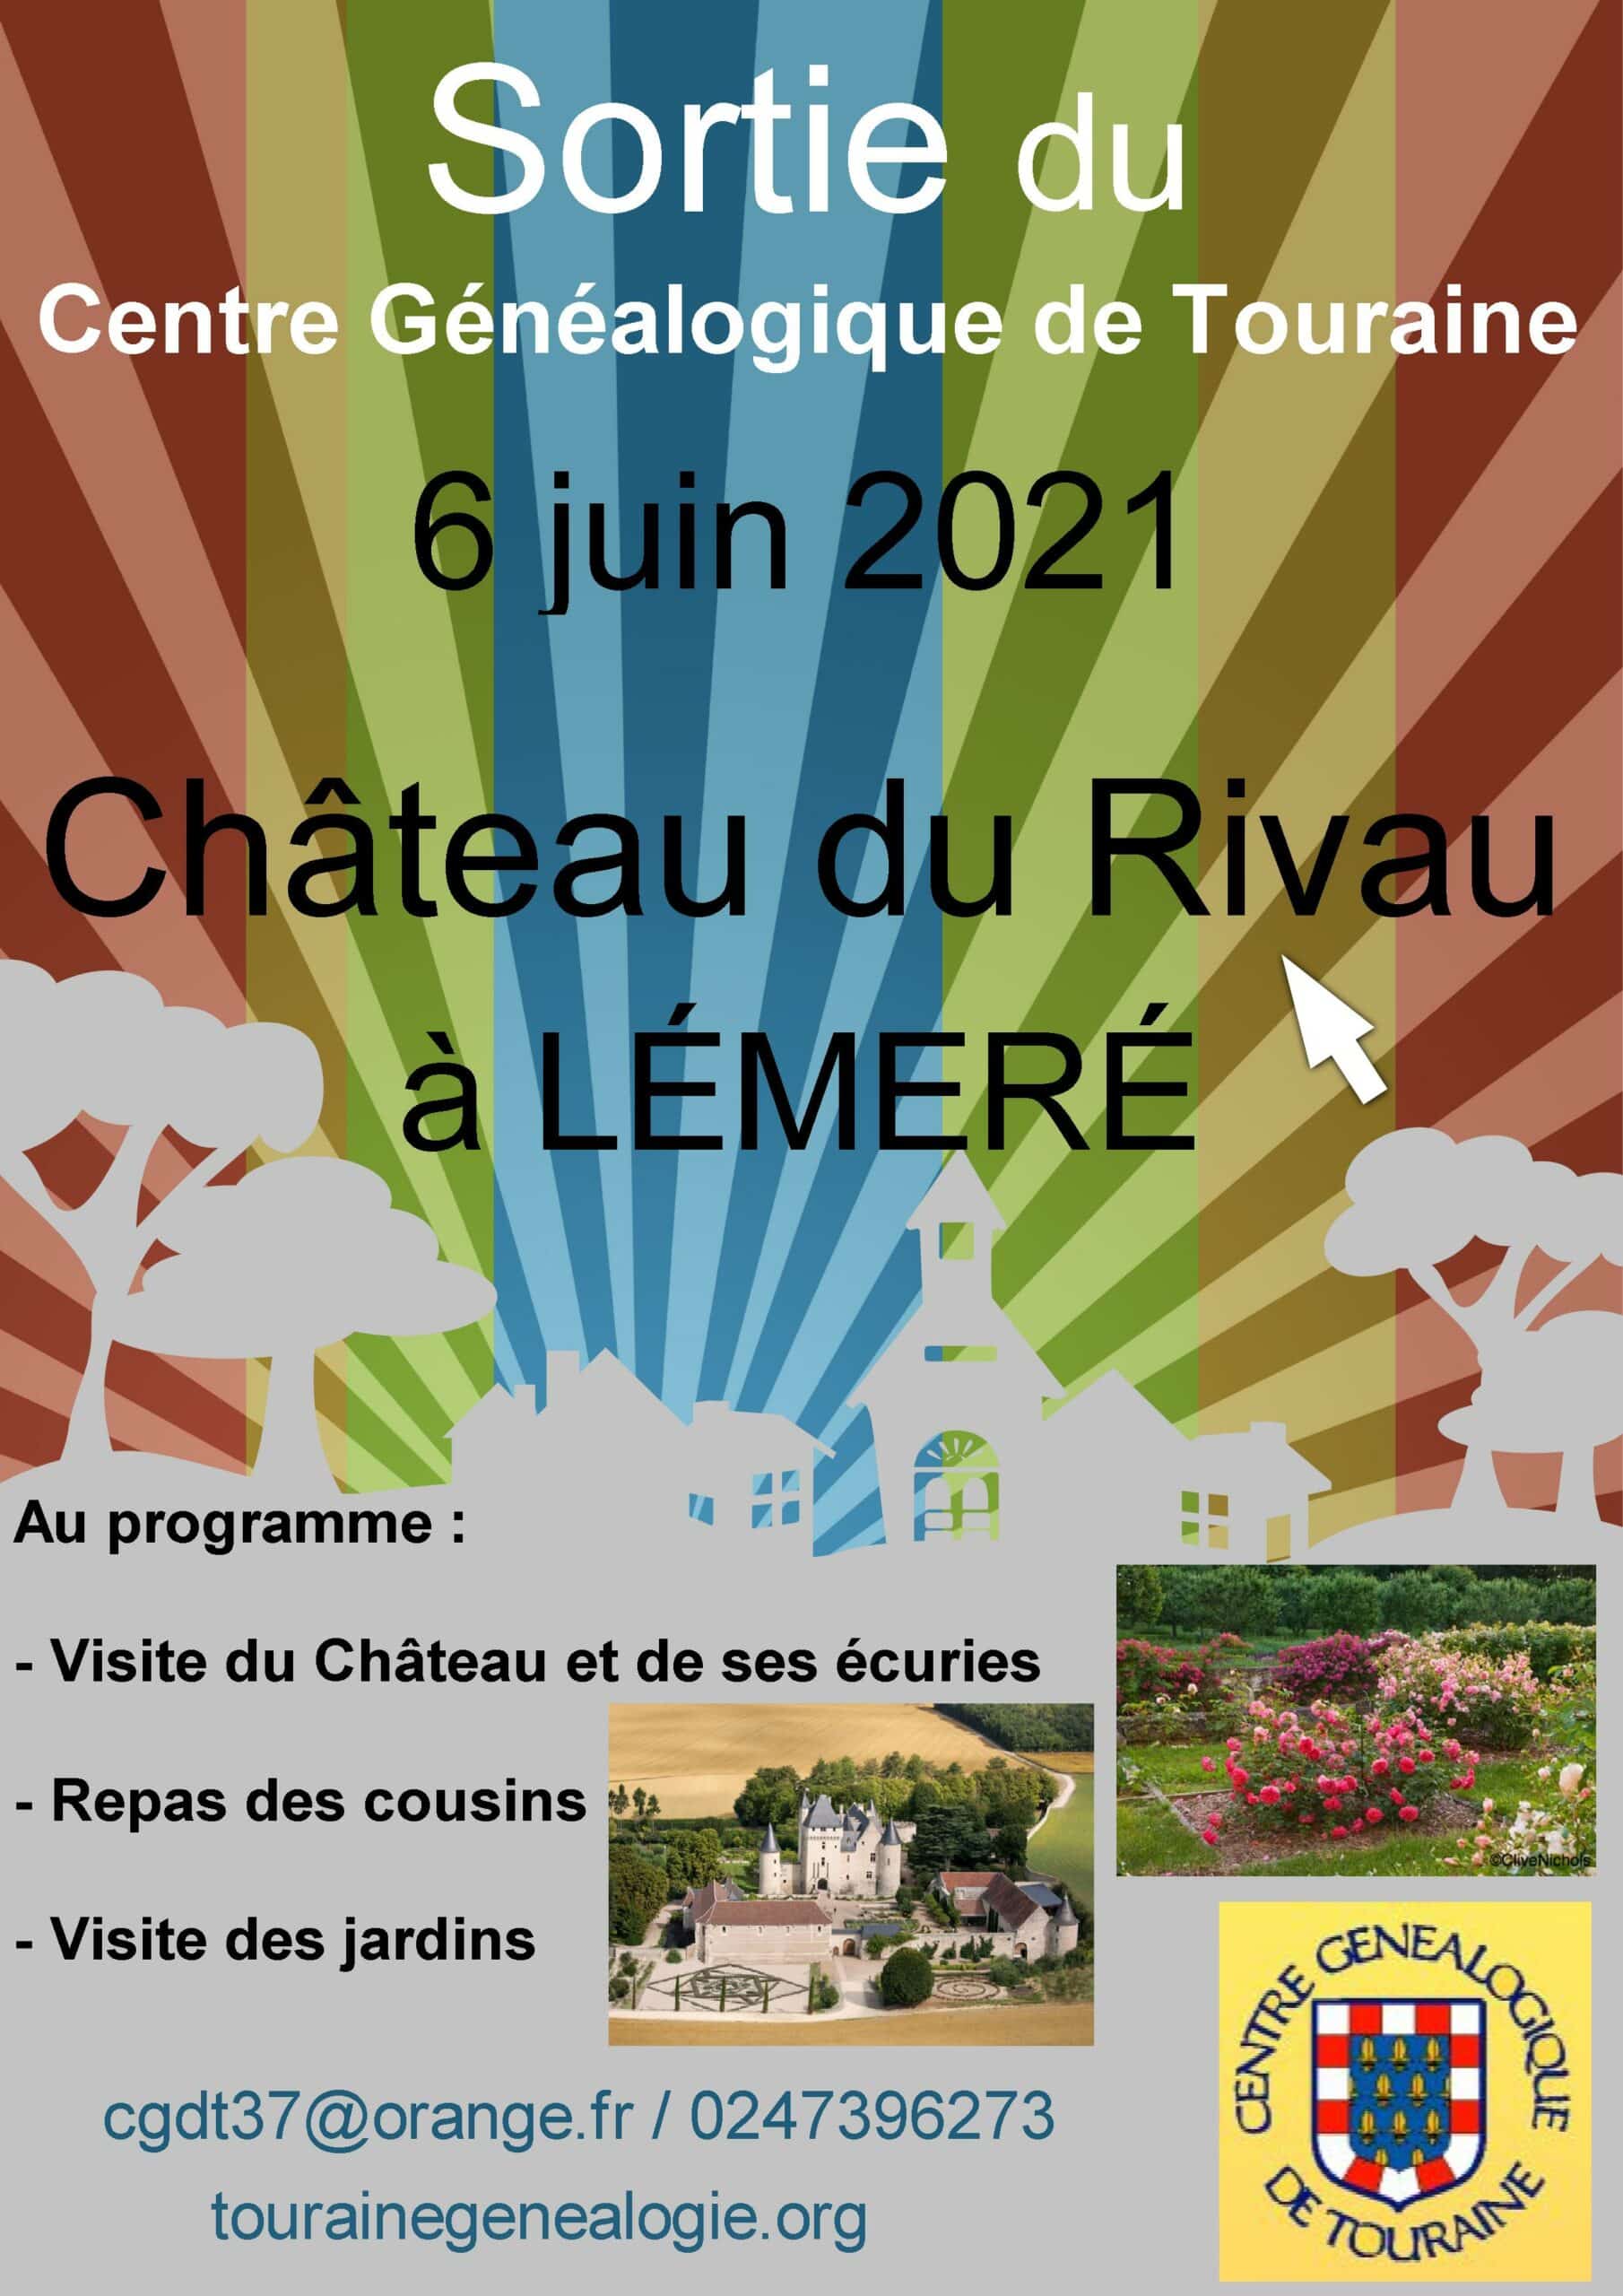 6 juin 2021 - Sortie annuelle - Château du Rivau